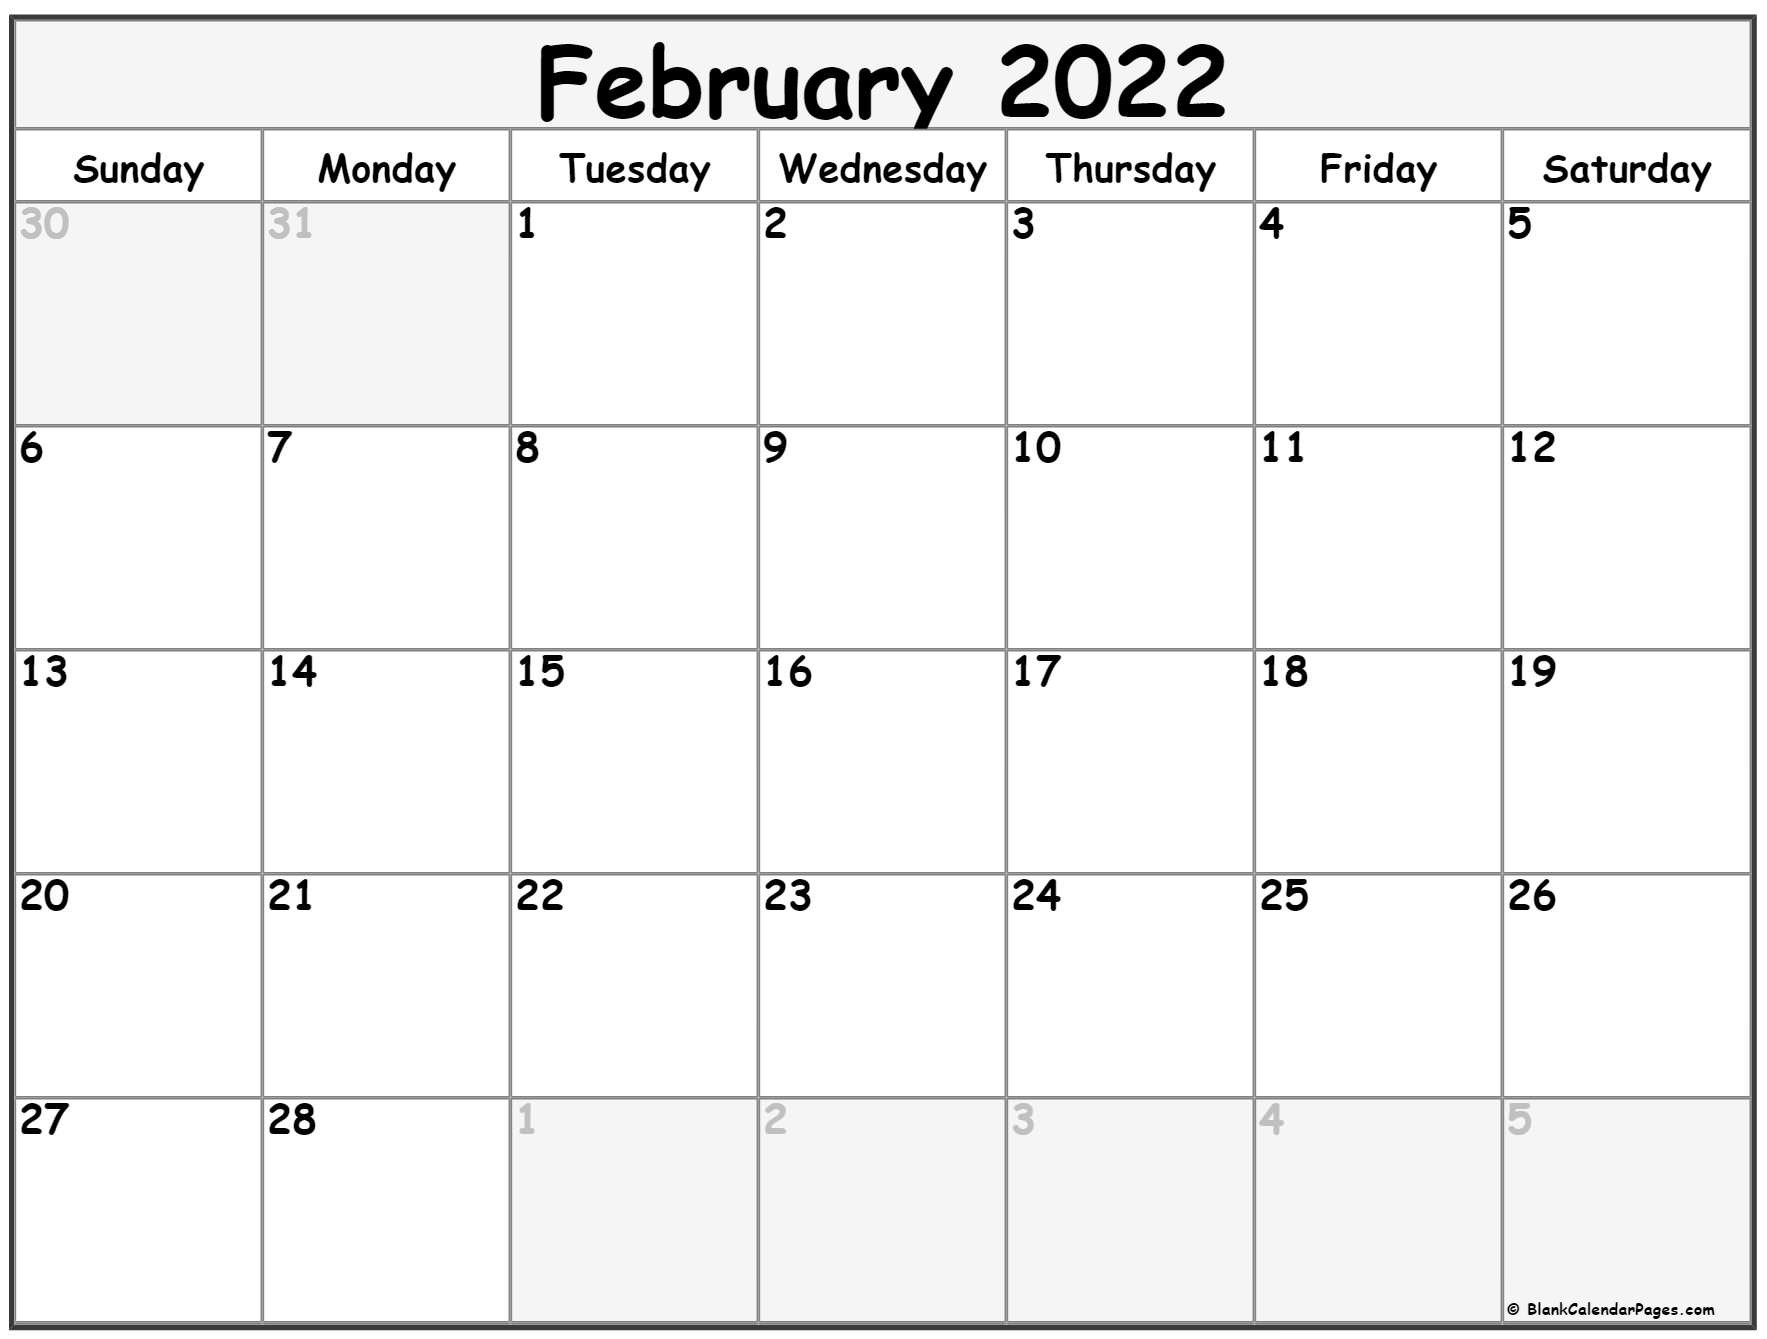 February 2022 Calendar | Free Printable Calendar Templates  December 2022 Through February 2022 Calendar